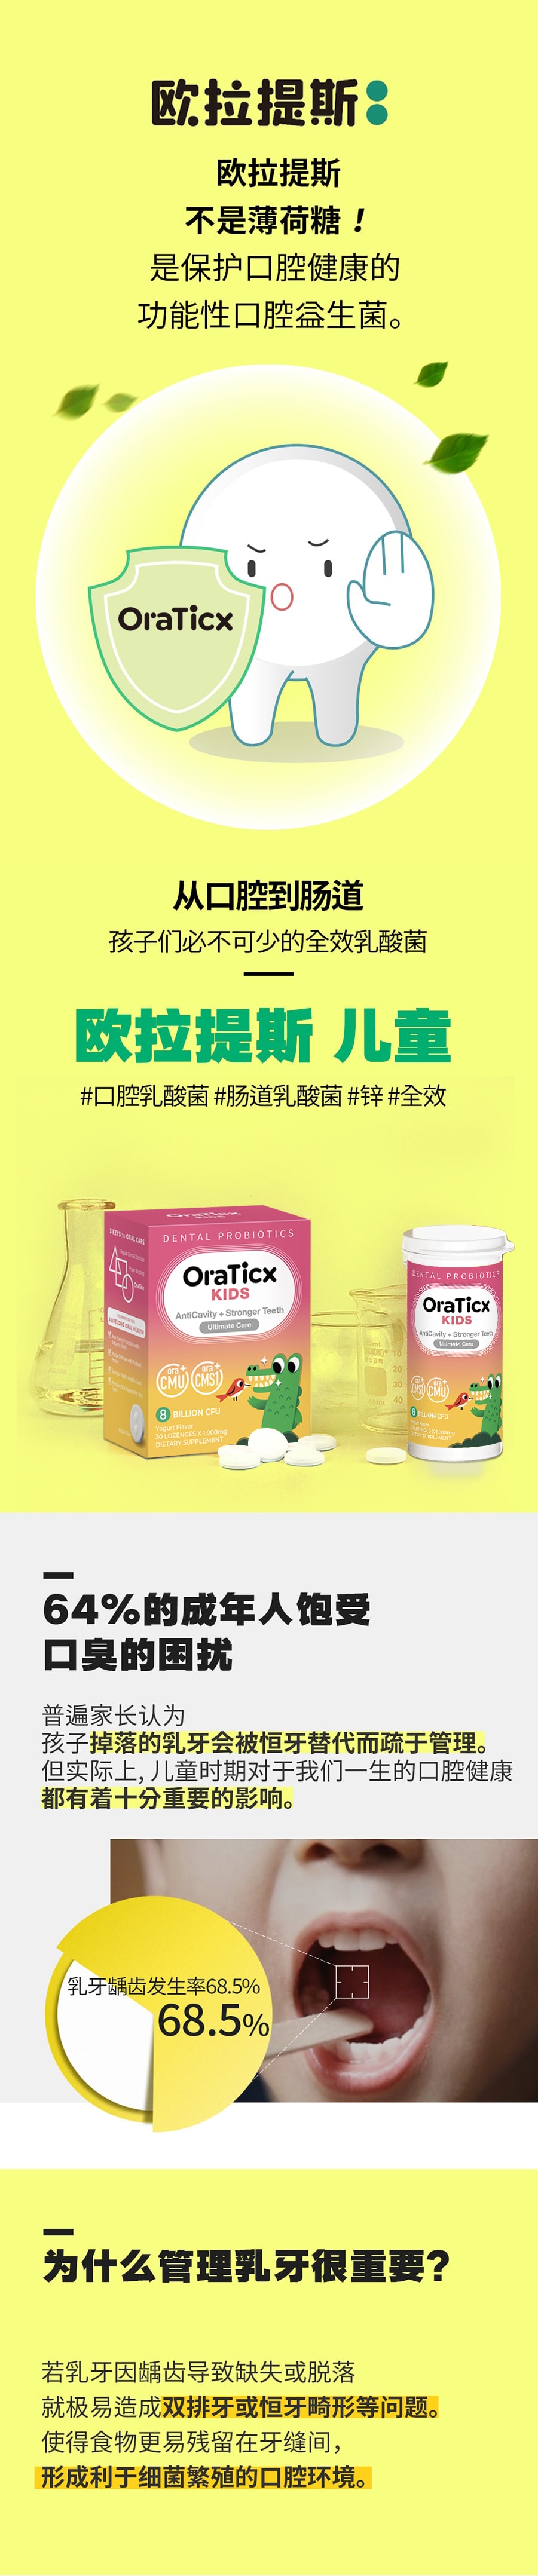 韓國 歐拉提斯(OraTicx) 兒童牙齒預防口腔乳酸菌 30顆